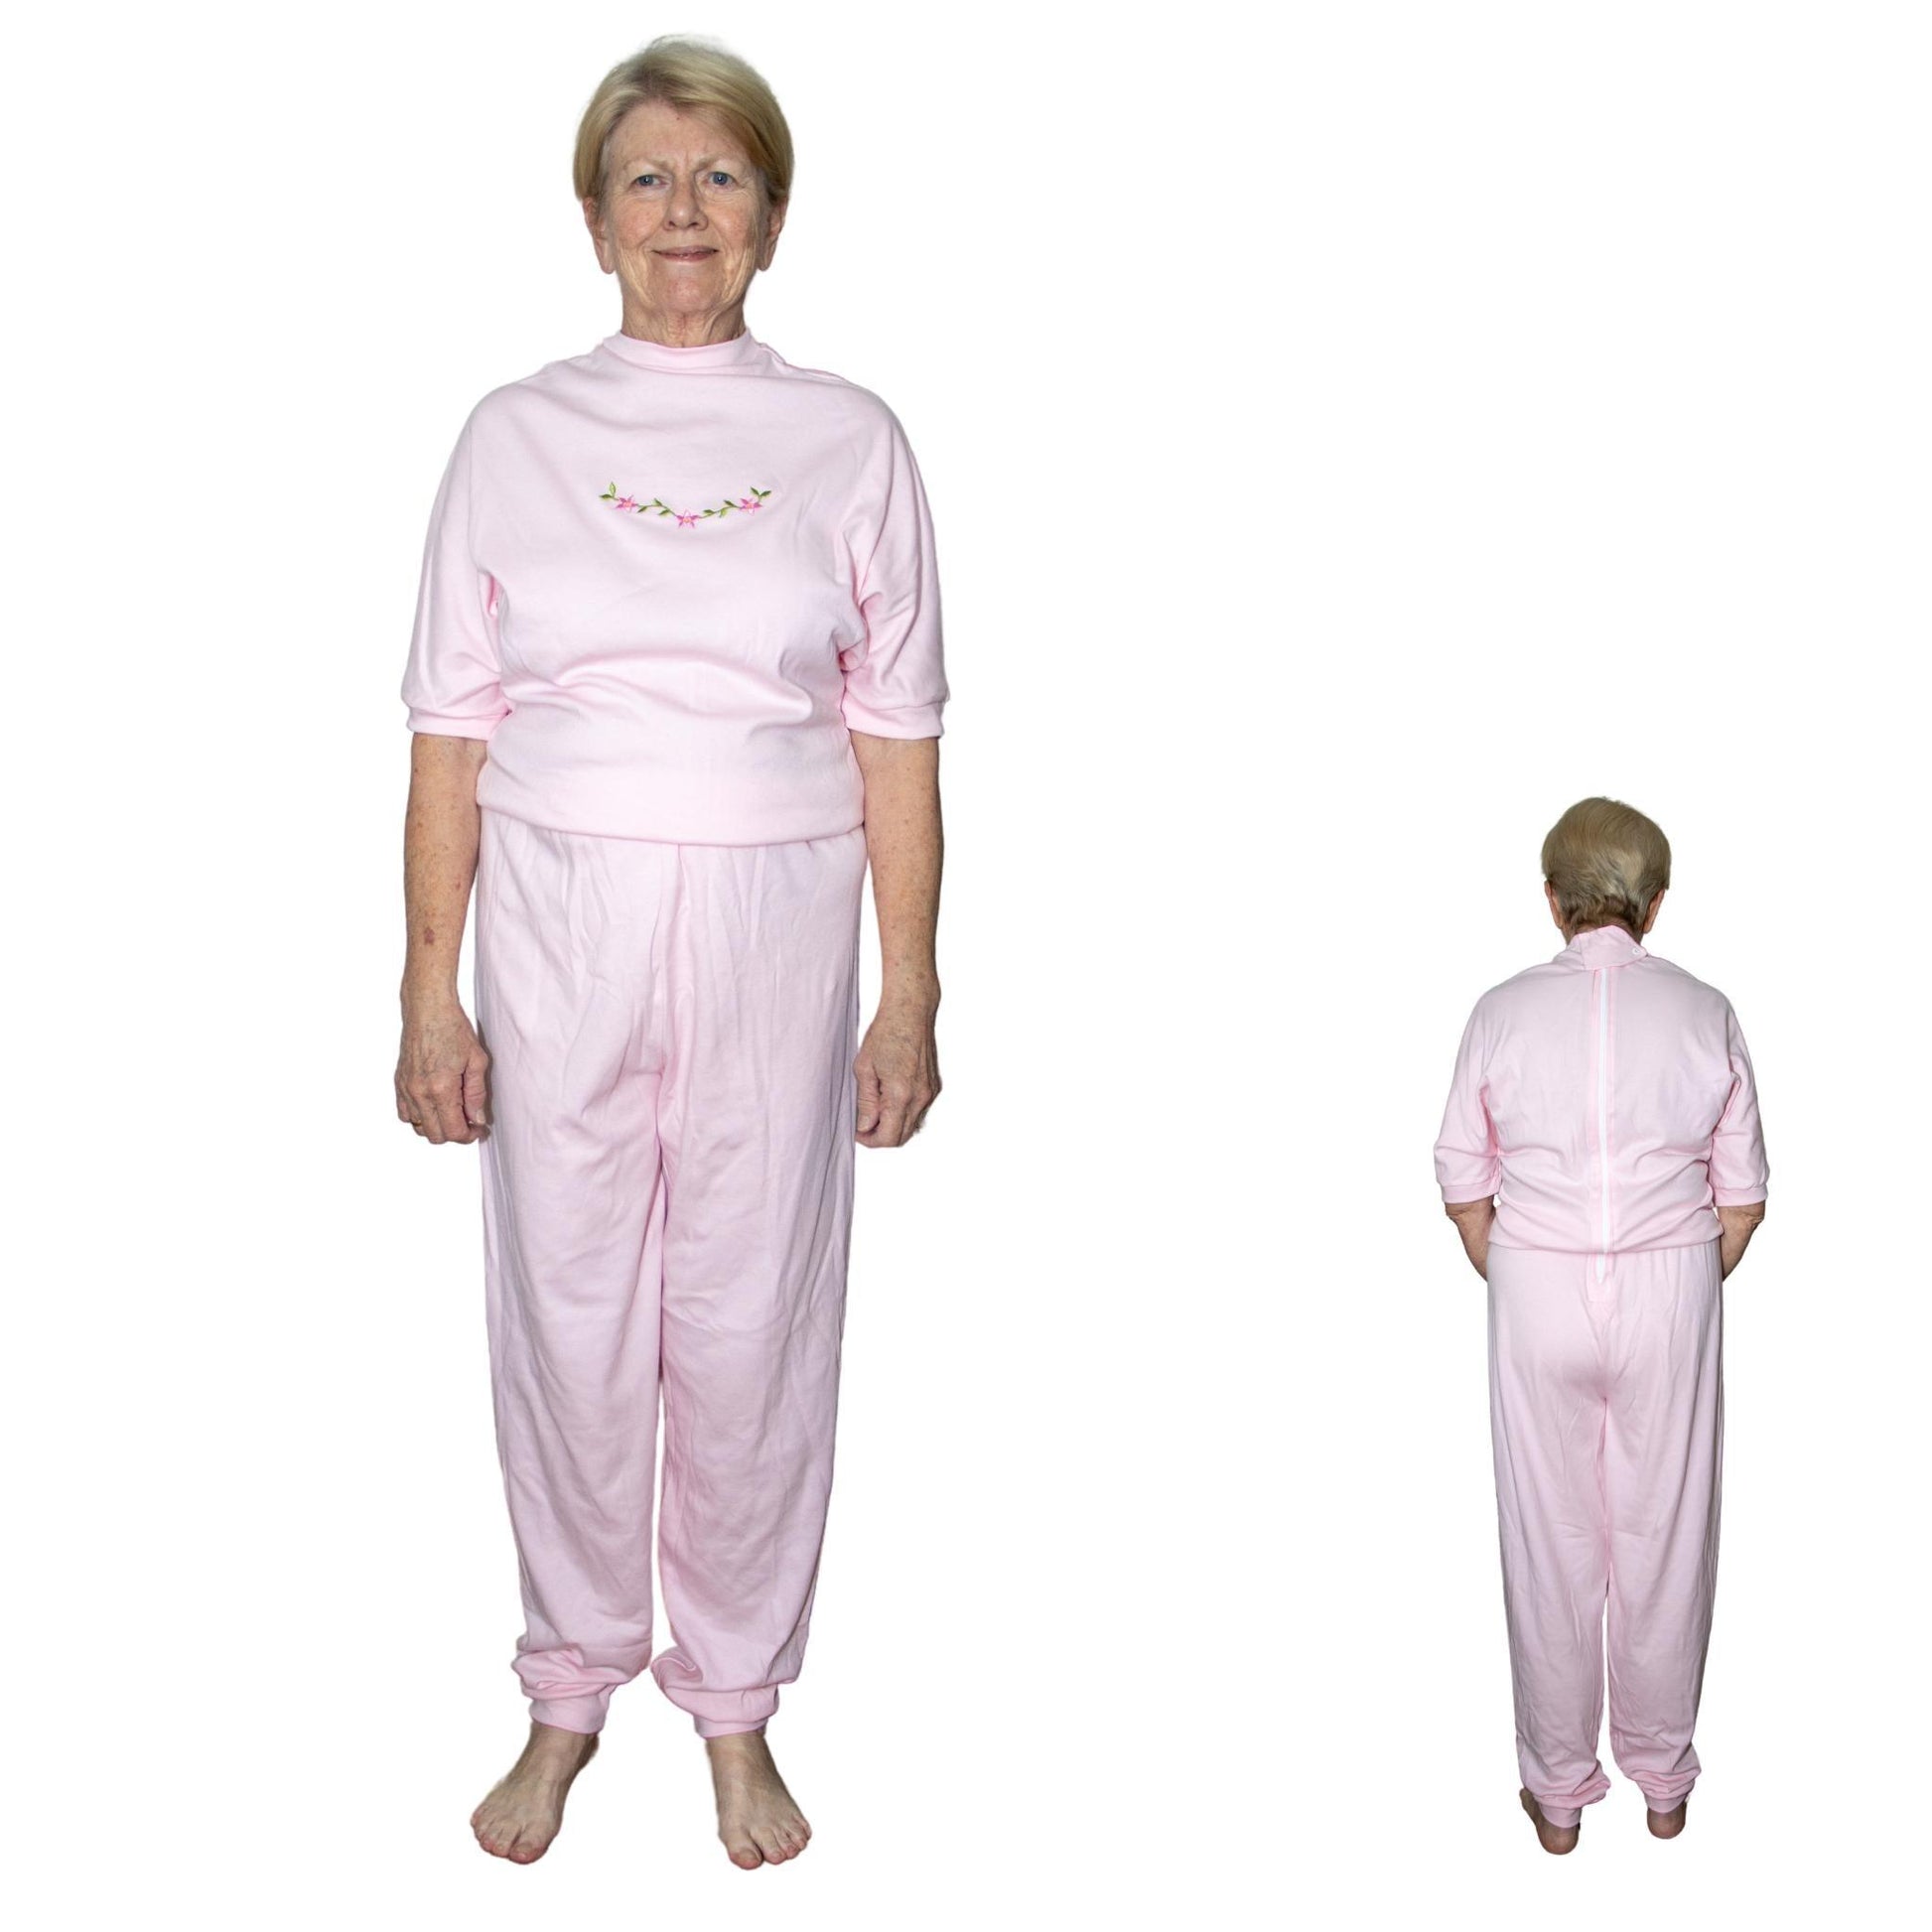 Women's Adaptive Nightwear: Ladies All-in-One Pyjamas with Short Sleeves - M019 - MEDORIS